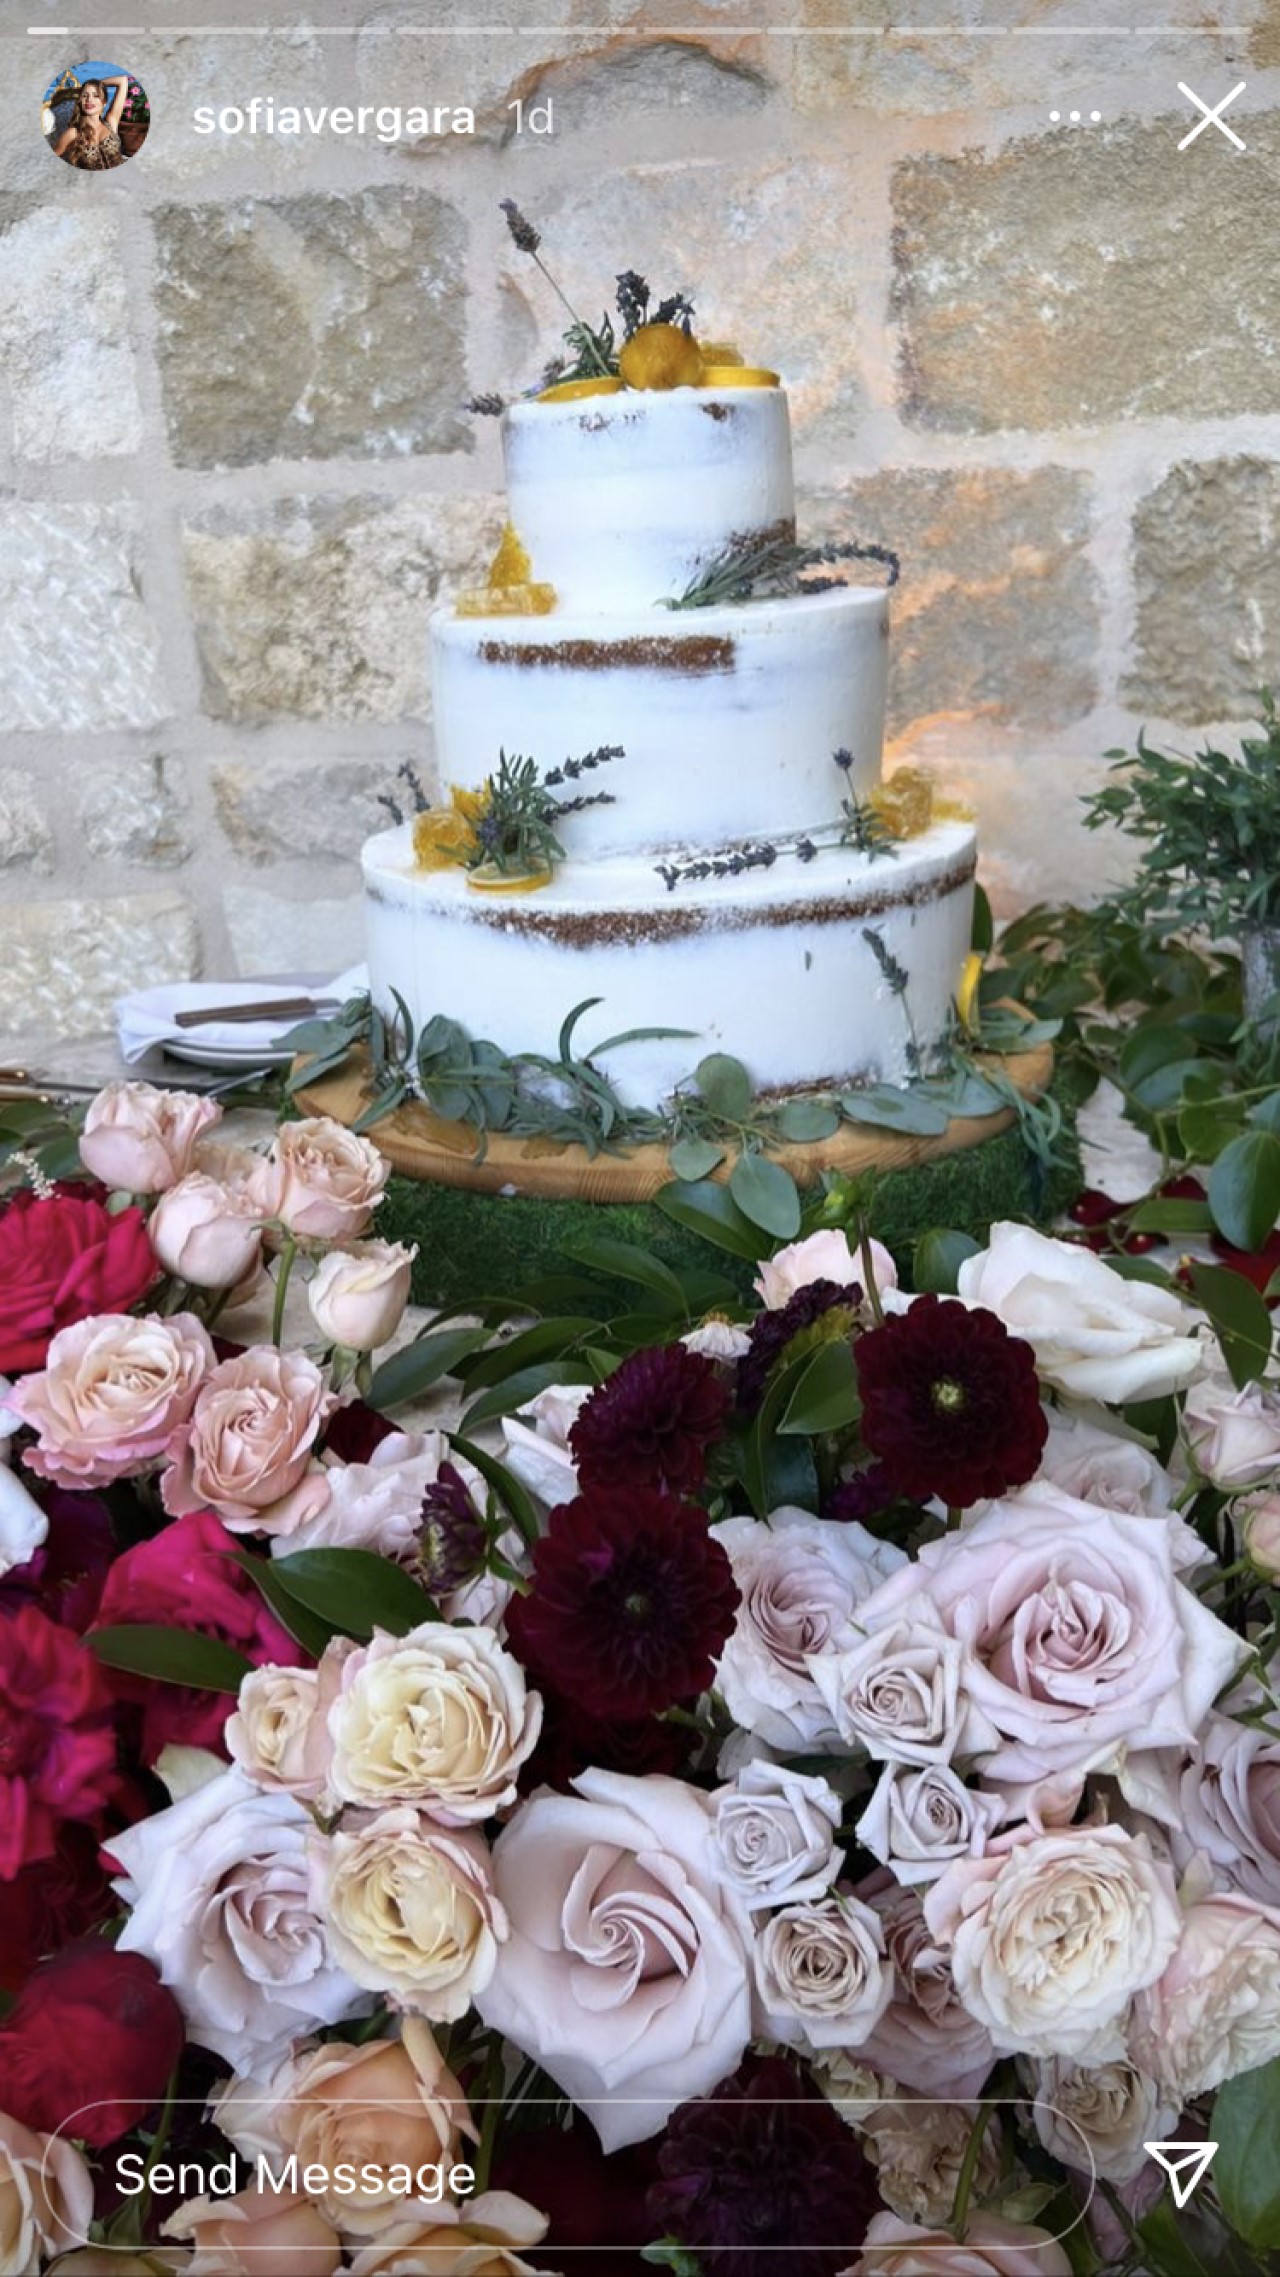 Sofia Vergara compartió una foto del pastel de bodas de Sarah Hyland y Wells Adams.